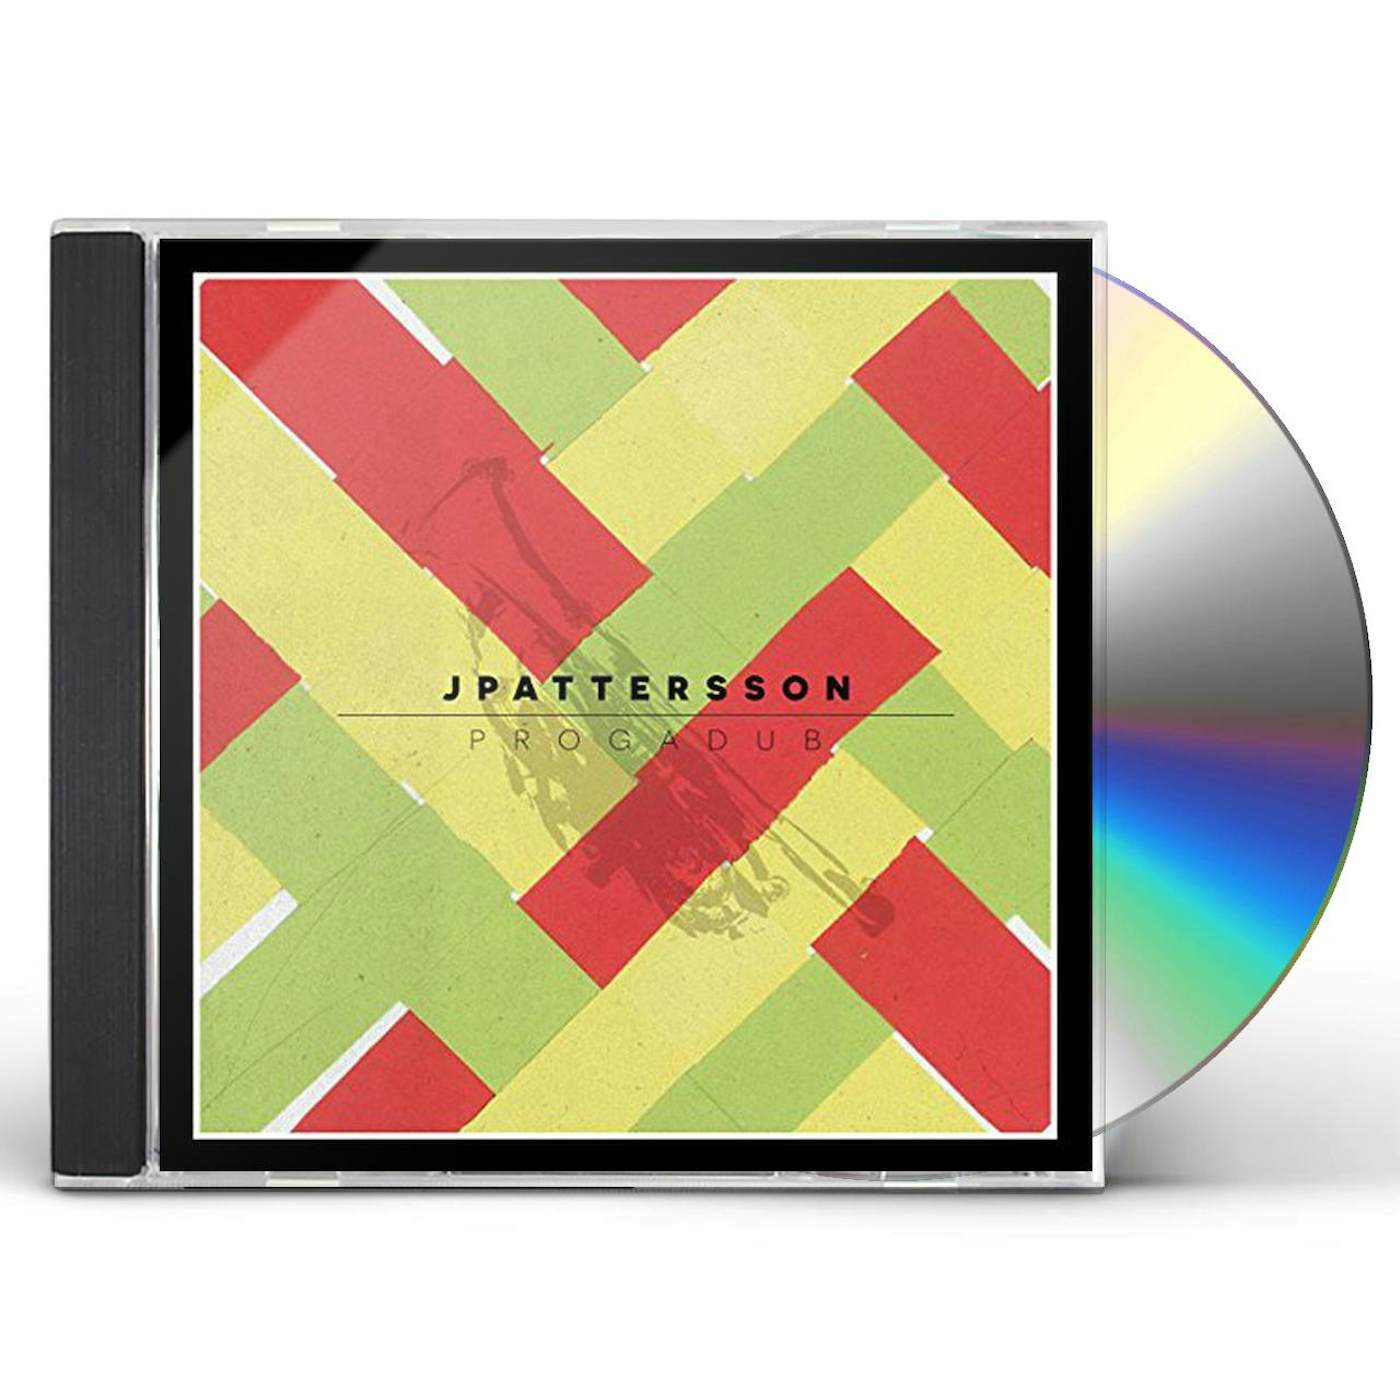 JPattersson PROGADUB CD